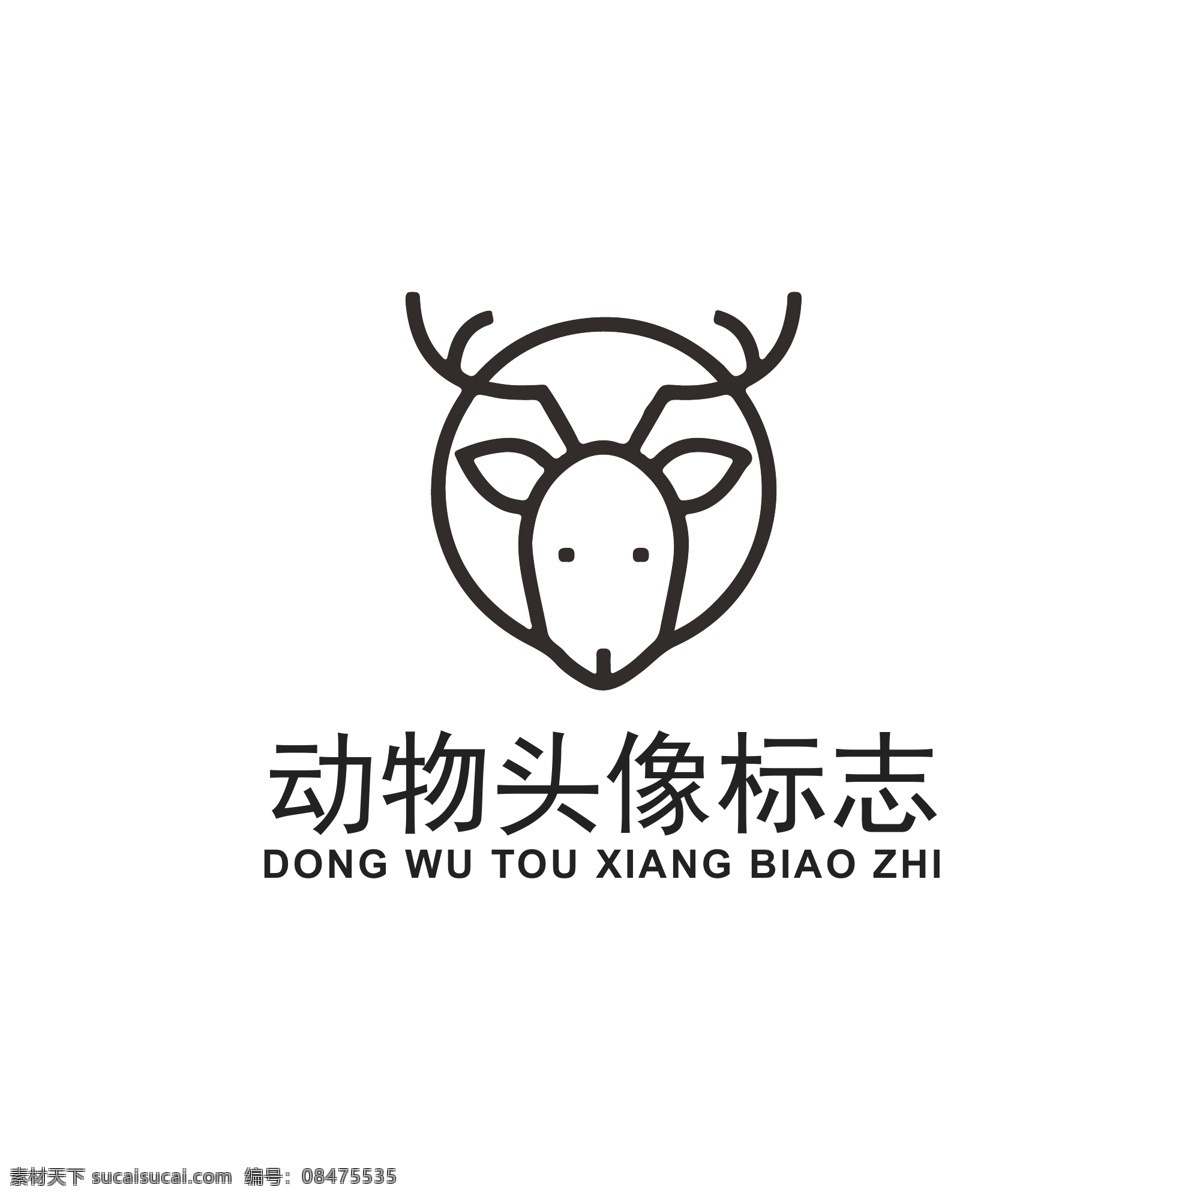 几何 动物 头像 logo 小鹿 鹿logo 动物logo 几何动物 可爱卡通动物 品牌logo 通用logo logo设计 小鹿头像 标识 标志 ai矢量